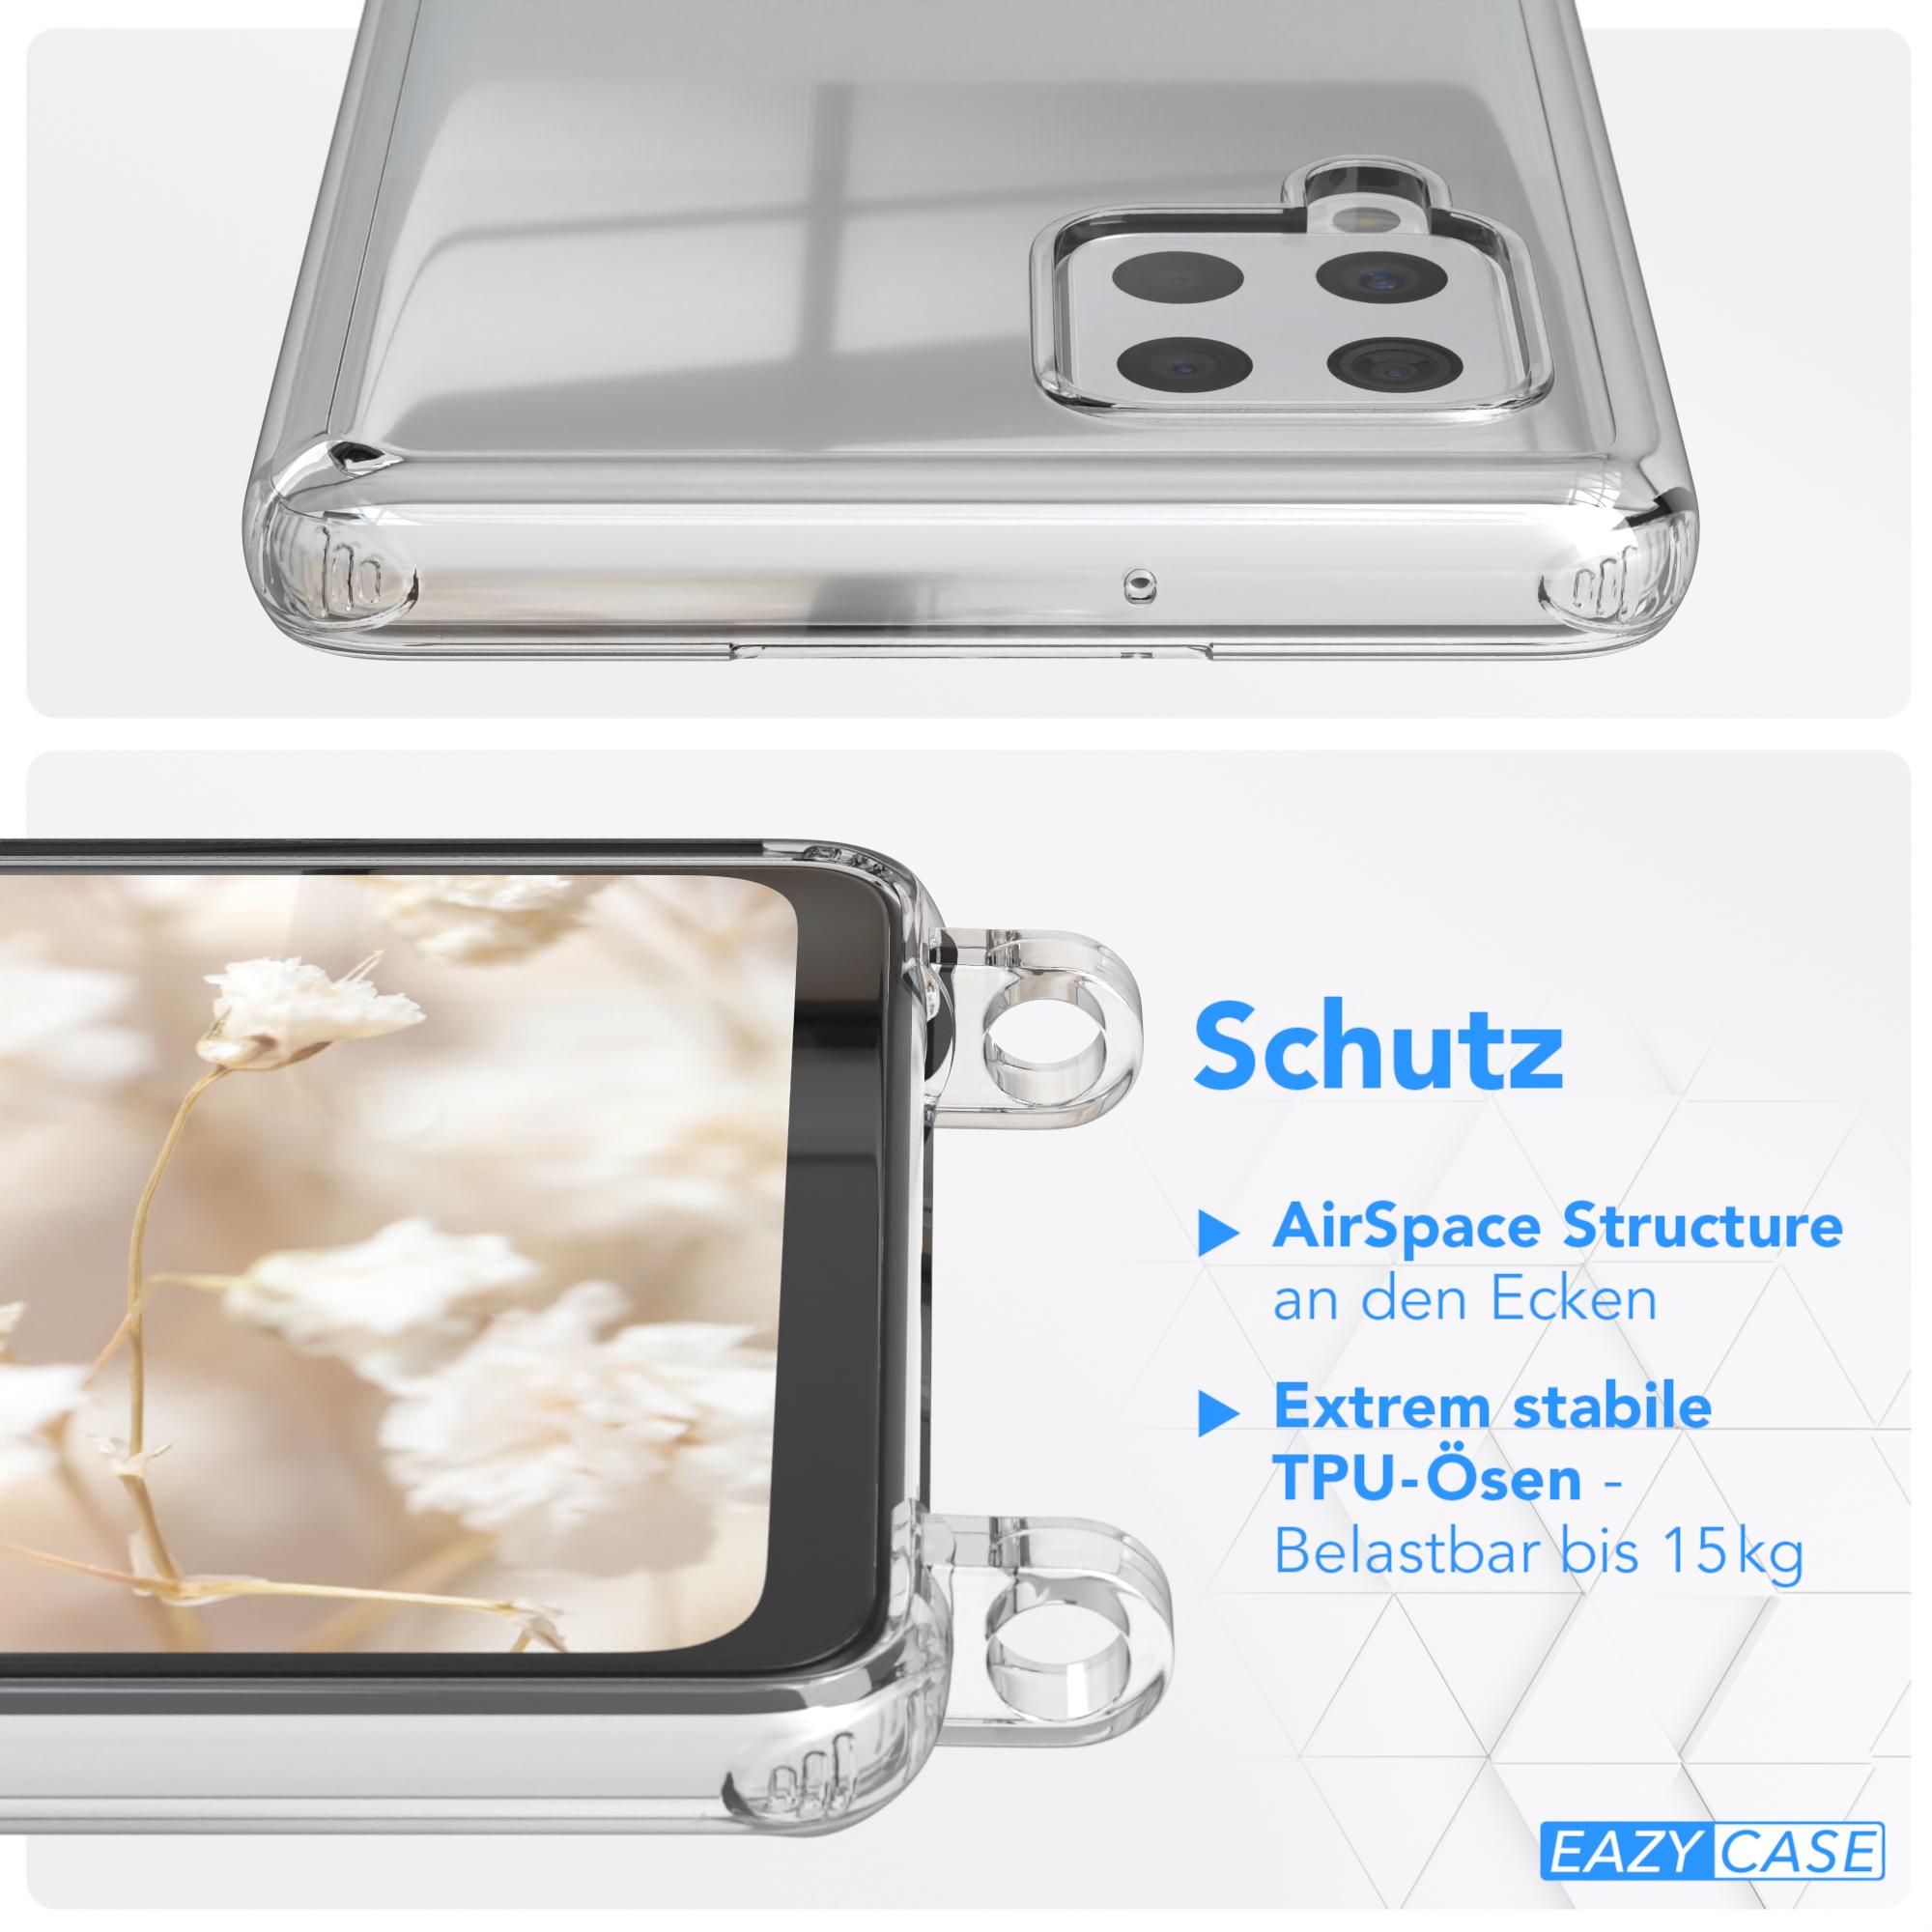 EAZY CASE Transparente Handyhülle mit Samsung, A42 Mix 5G, Kordel Galaxy Boho Braun Umhängetasche, Style